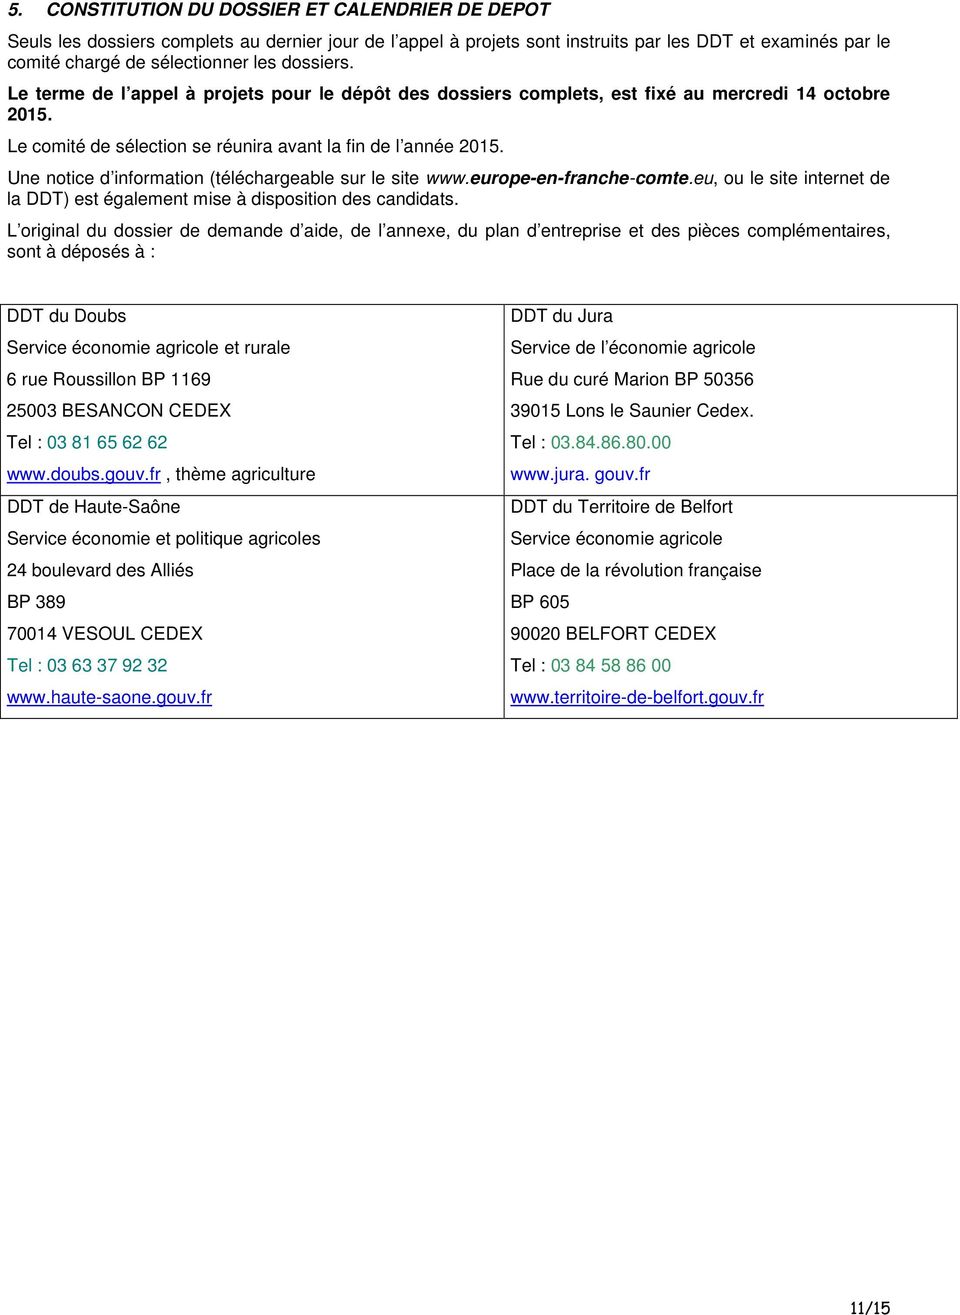 Une notice d information (téléchargeable sur le site www.europe-en-franche-comte.eu, ou le site internet de la DDT) est également mise à disposition des candidats.